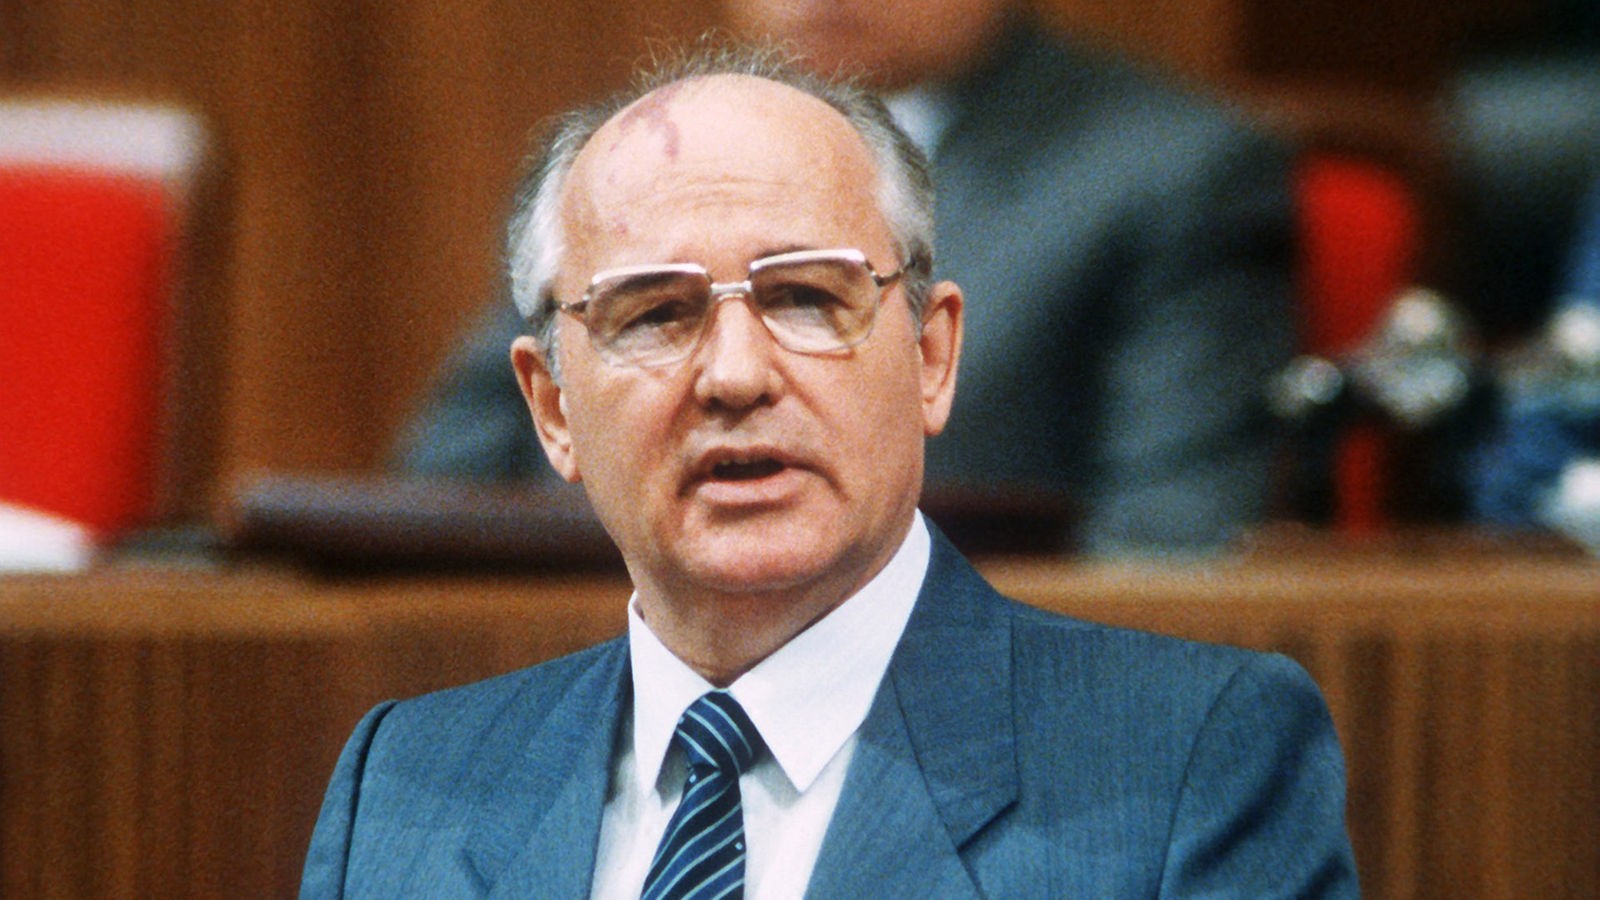 Stichtag 1 November 1987 Michail Gorbatschows Buch Perestroika Erscheint Stichtag Wdr